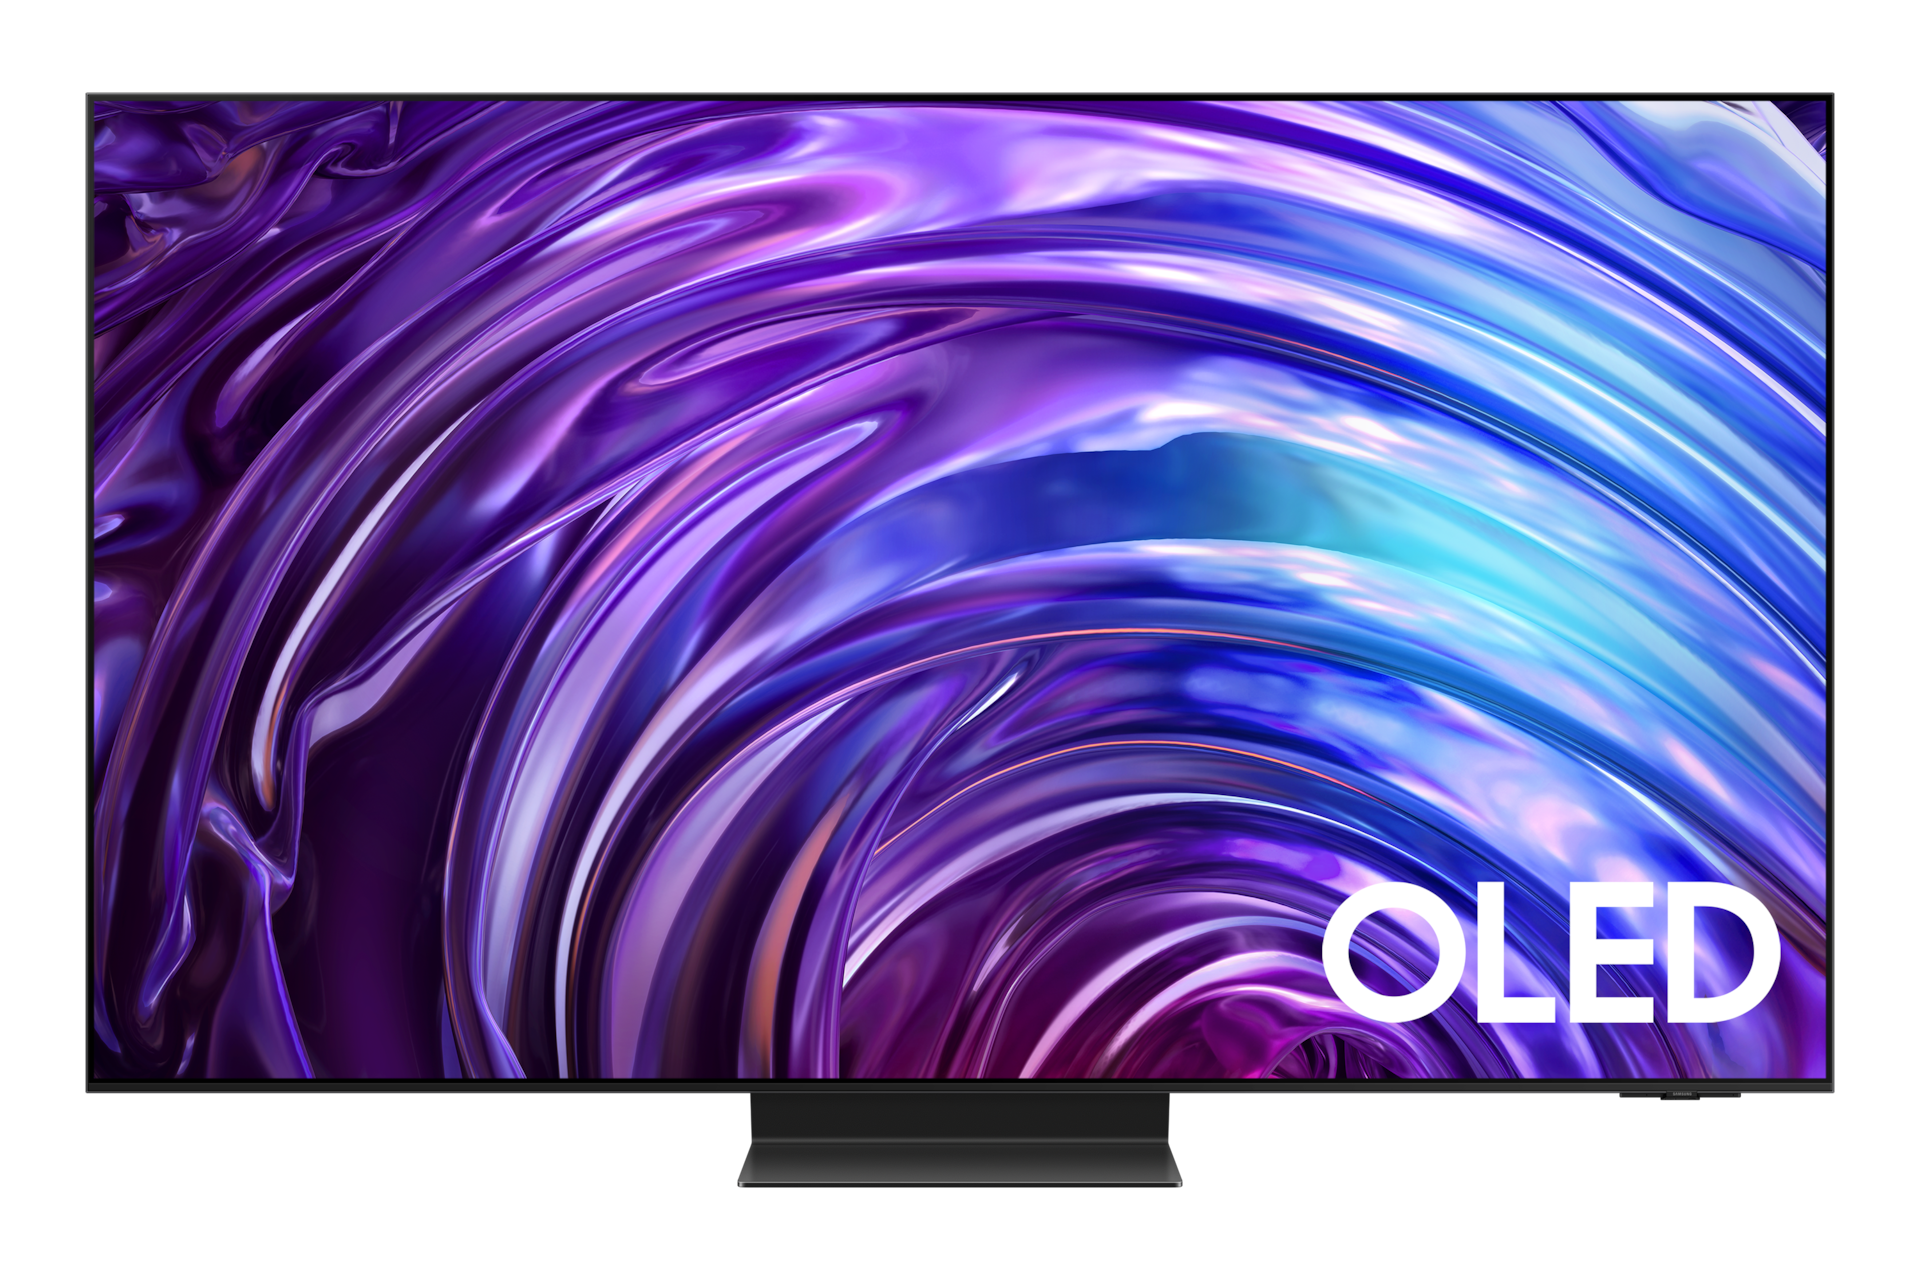 Telewizor 65” OLED S95D 4K Smart TV stojący na podstawie, widok na wprost